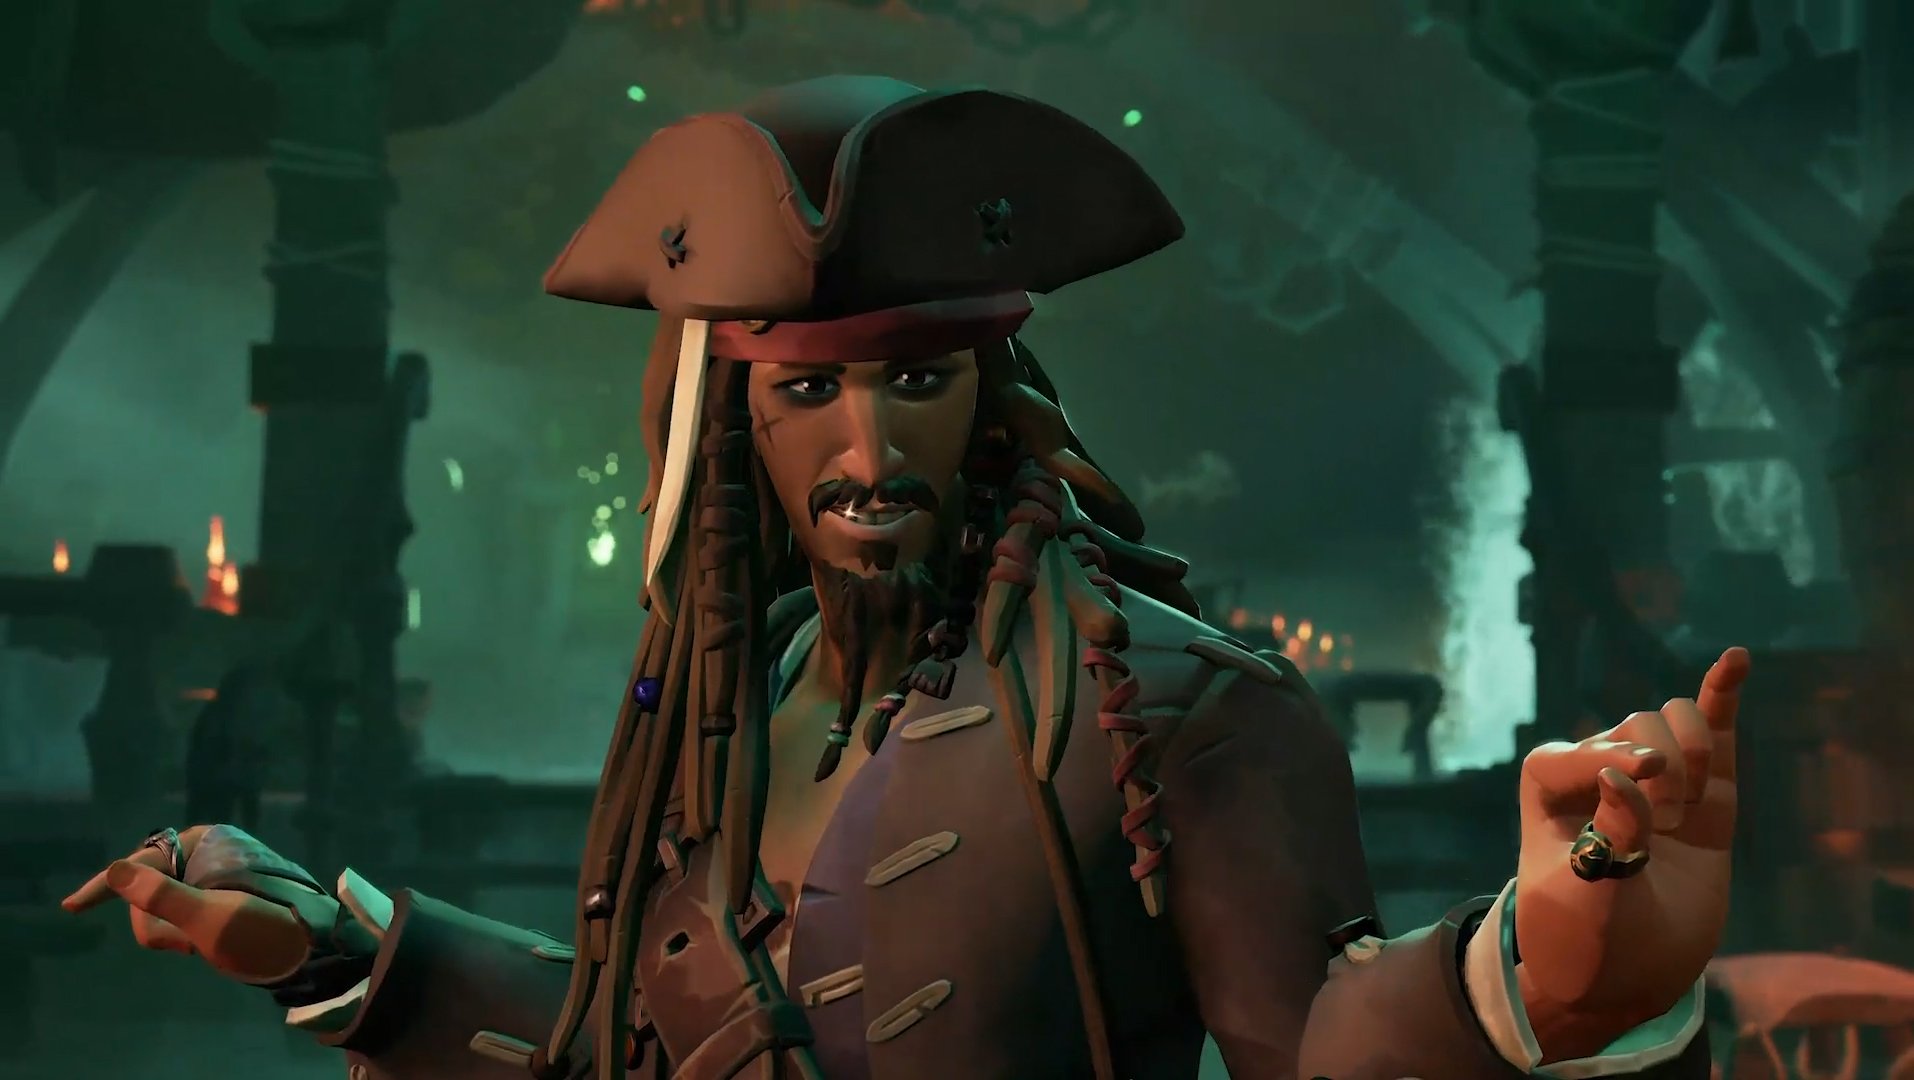 Análise | Sea of Thieves – A Pirate’s Life traz Piratas do Caribe em ótima forma